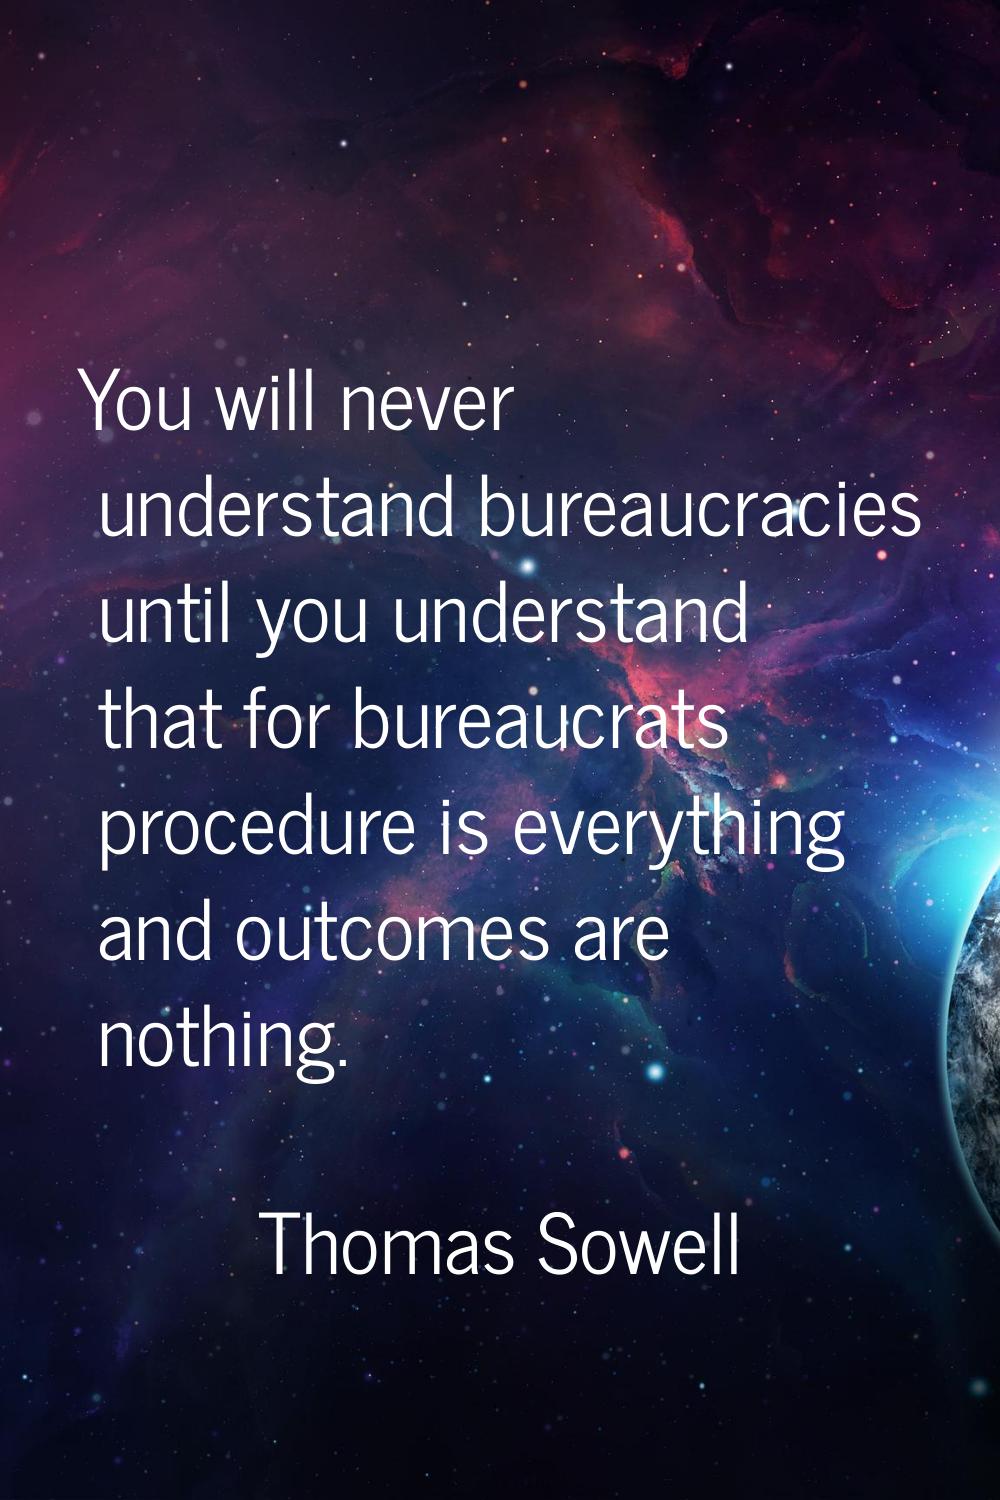 You will never understand bureaucracies until you understand that for bureaucrats procedure is ever